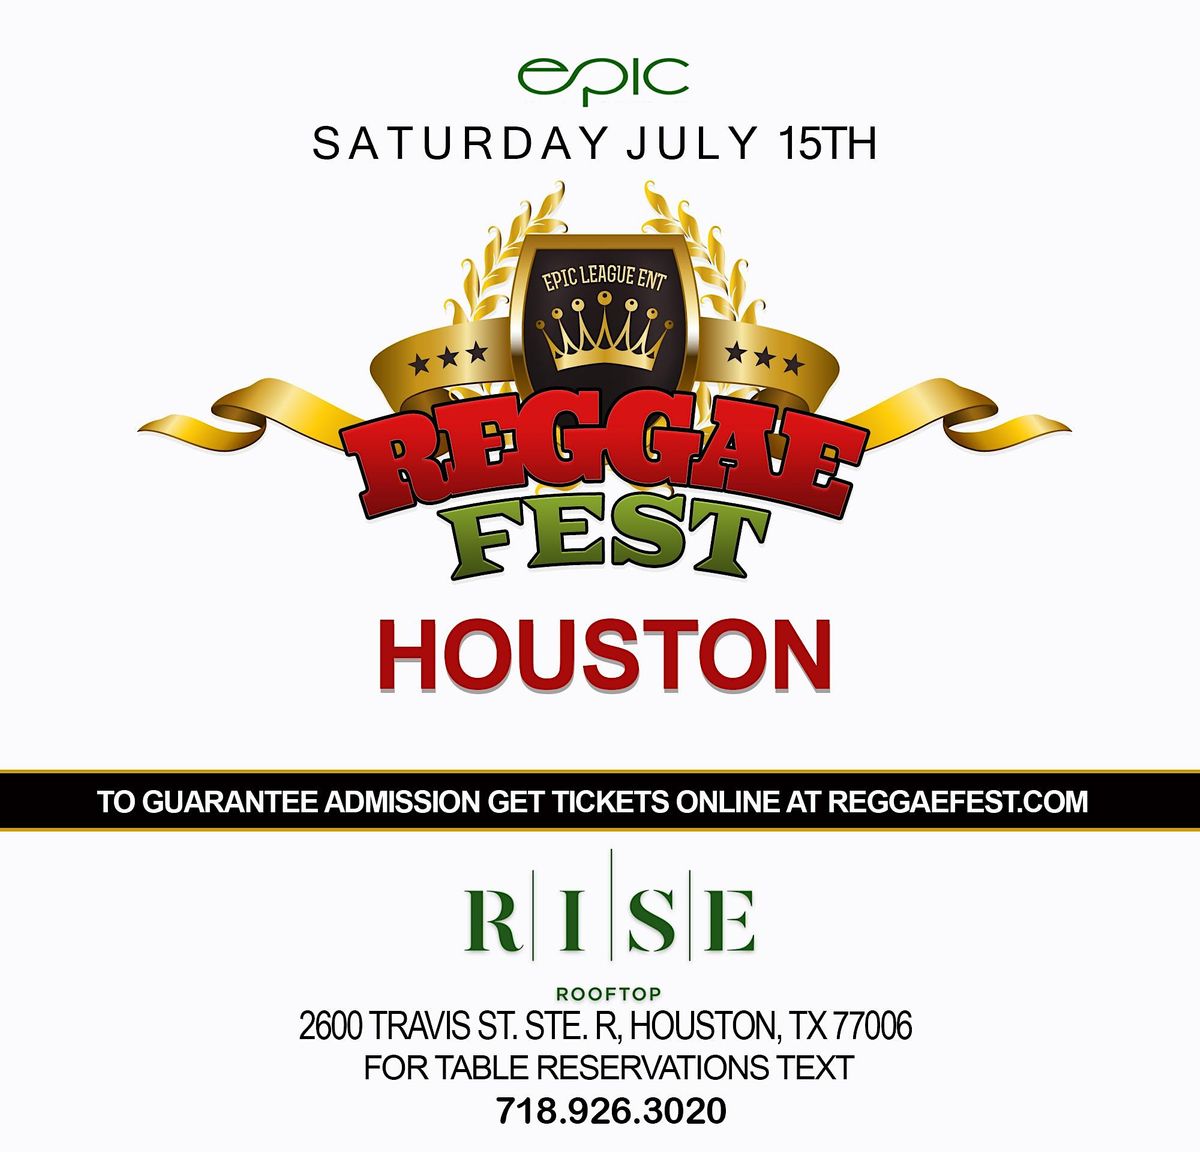 Reggae Fest Houston at Rise Roof Top